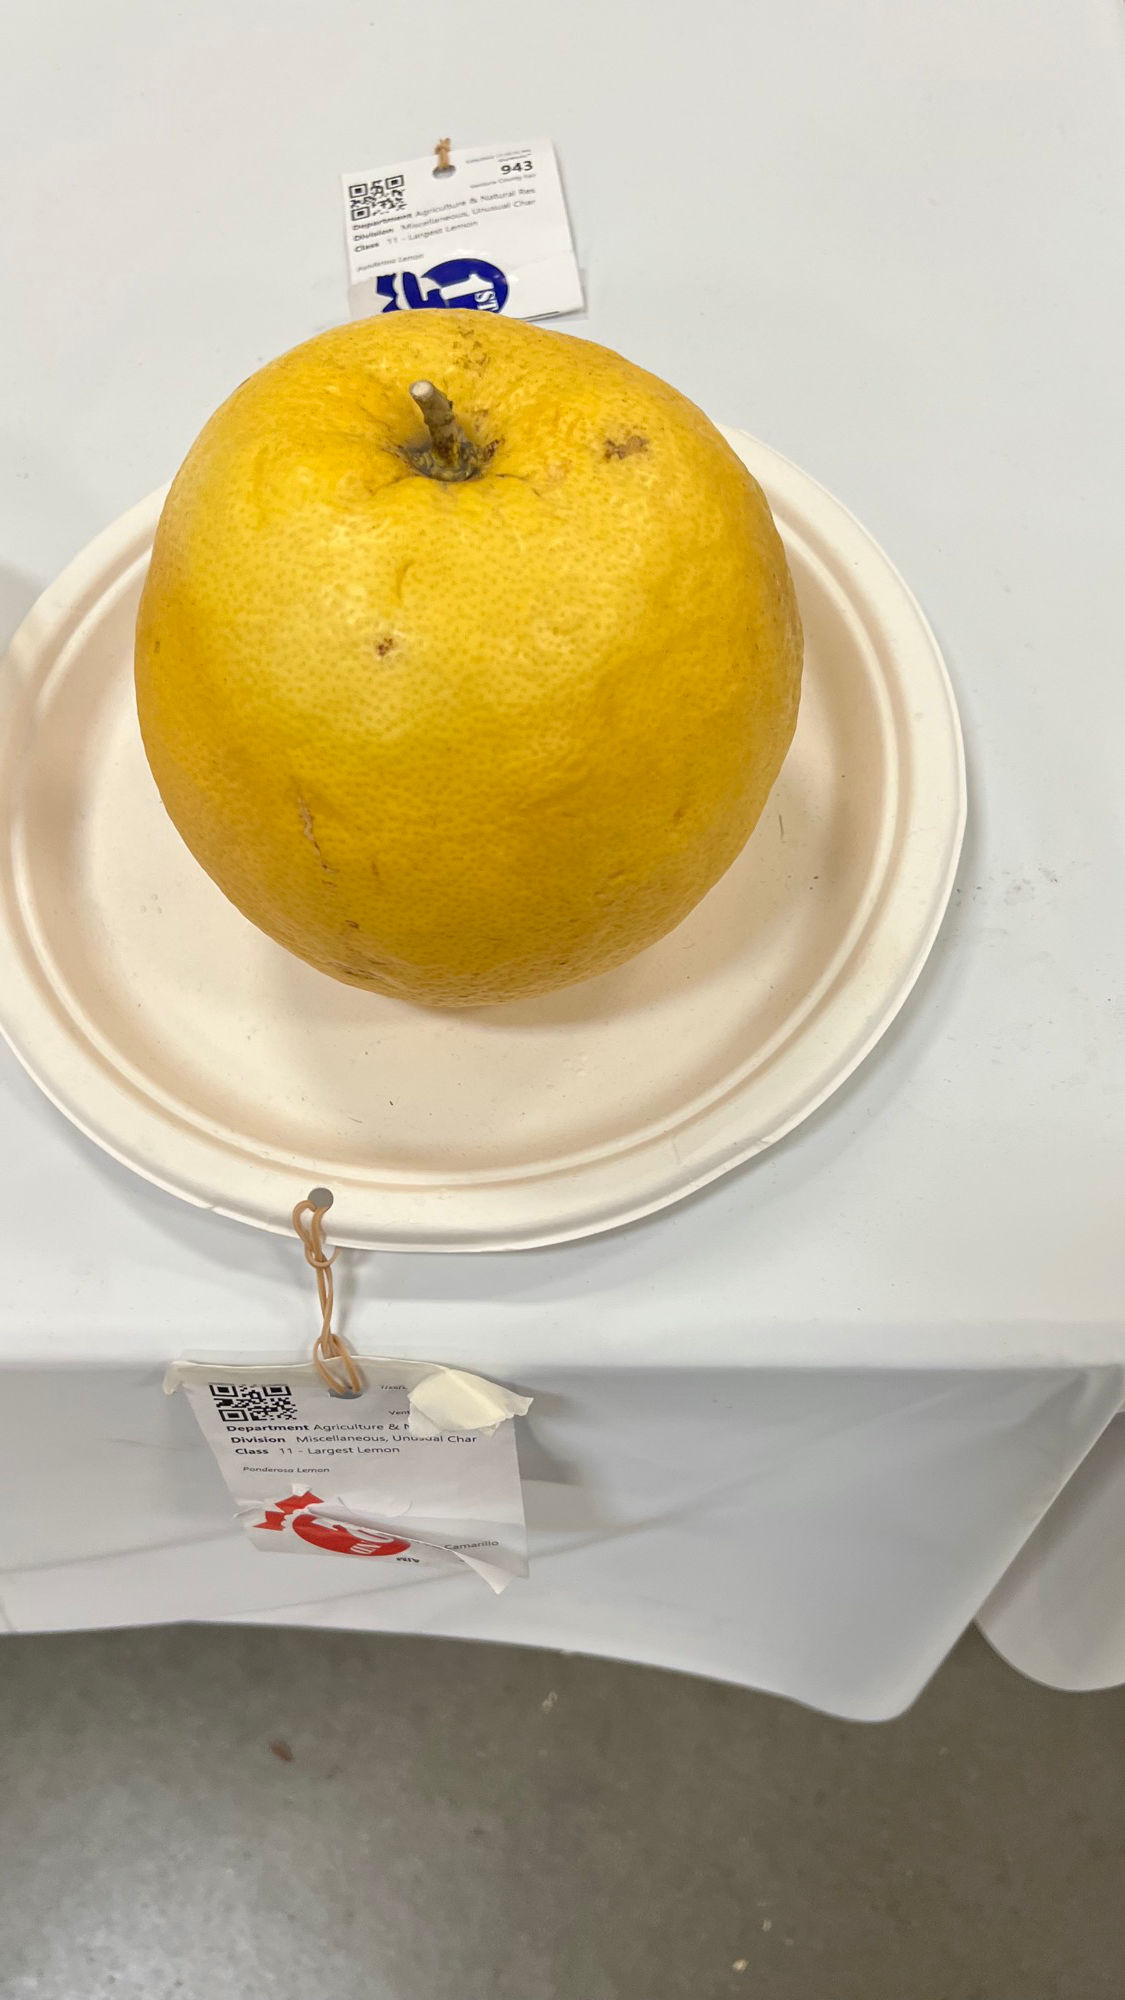 Ventura County Fair Largest Lemon